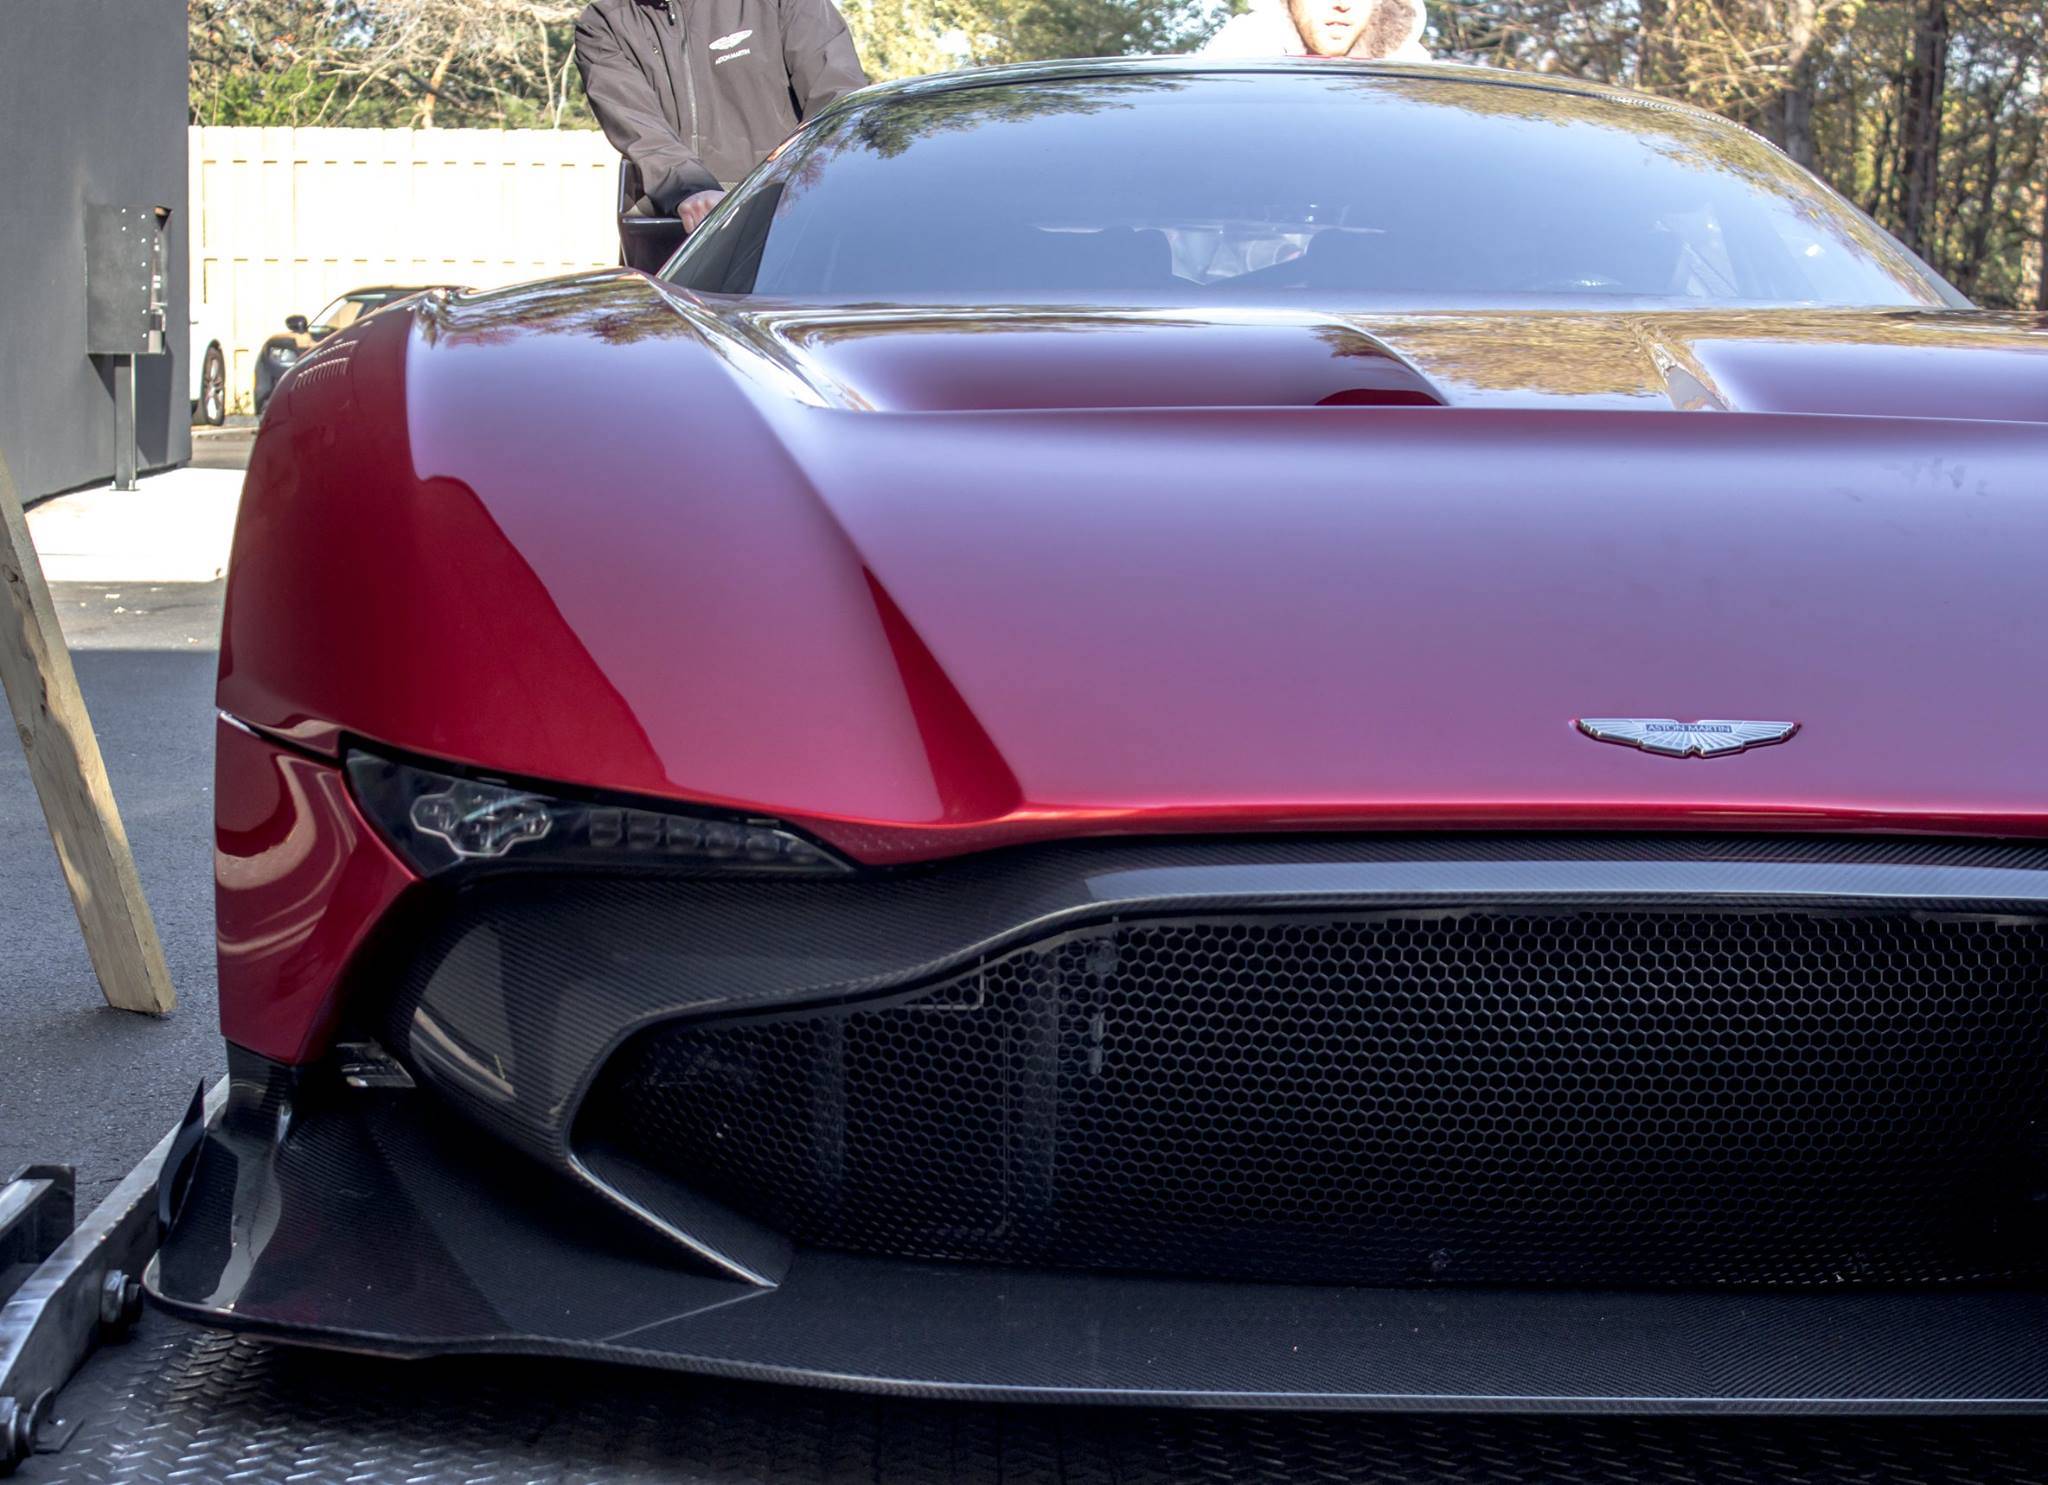 Первые гиперкары Aston Martin Vulcan отправились к своим владельцам Vulcan, aston martin, спорткар, суперкар